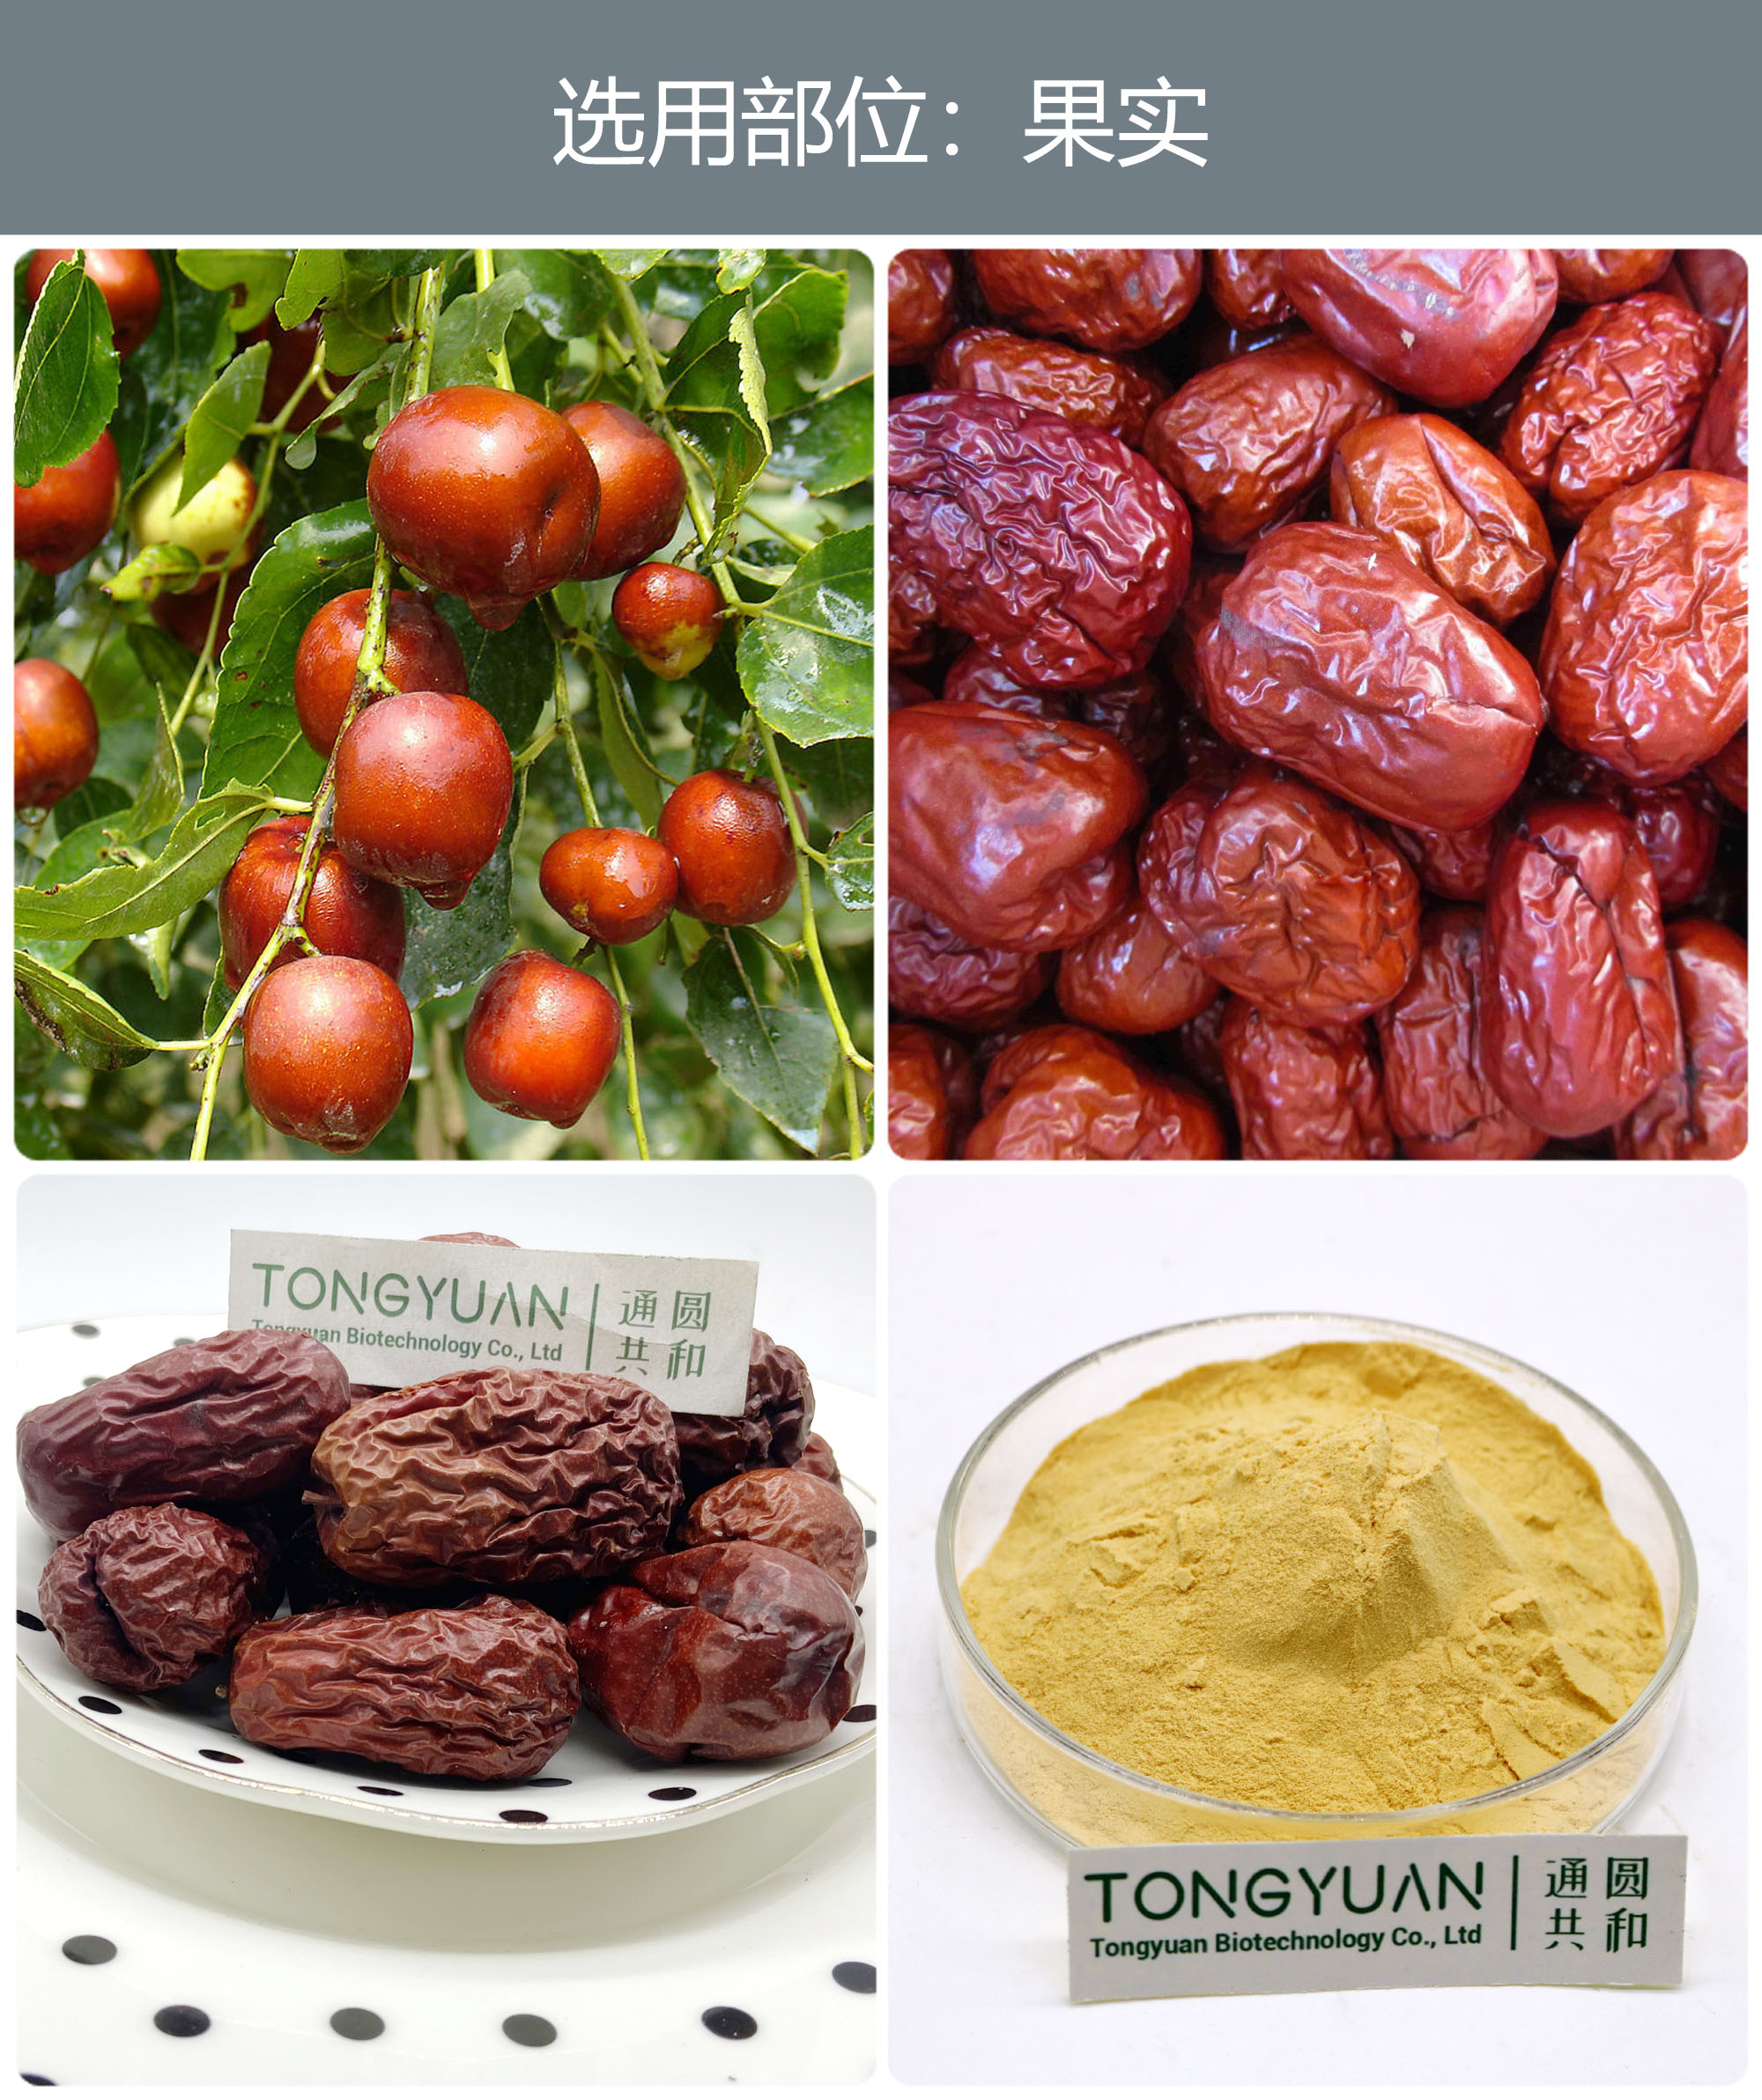 红枣提取物别 名:壶,木蜜,干枣,美枣,良枣,红枣,干赤枣,胶枣,南枣